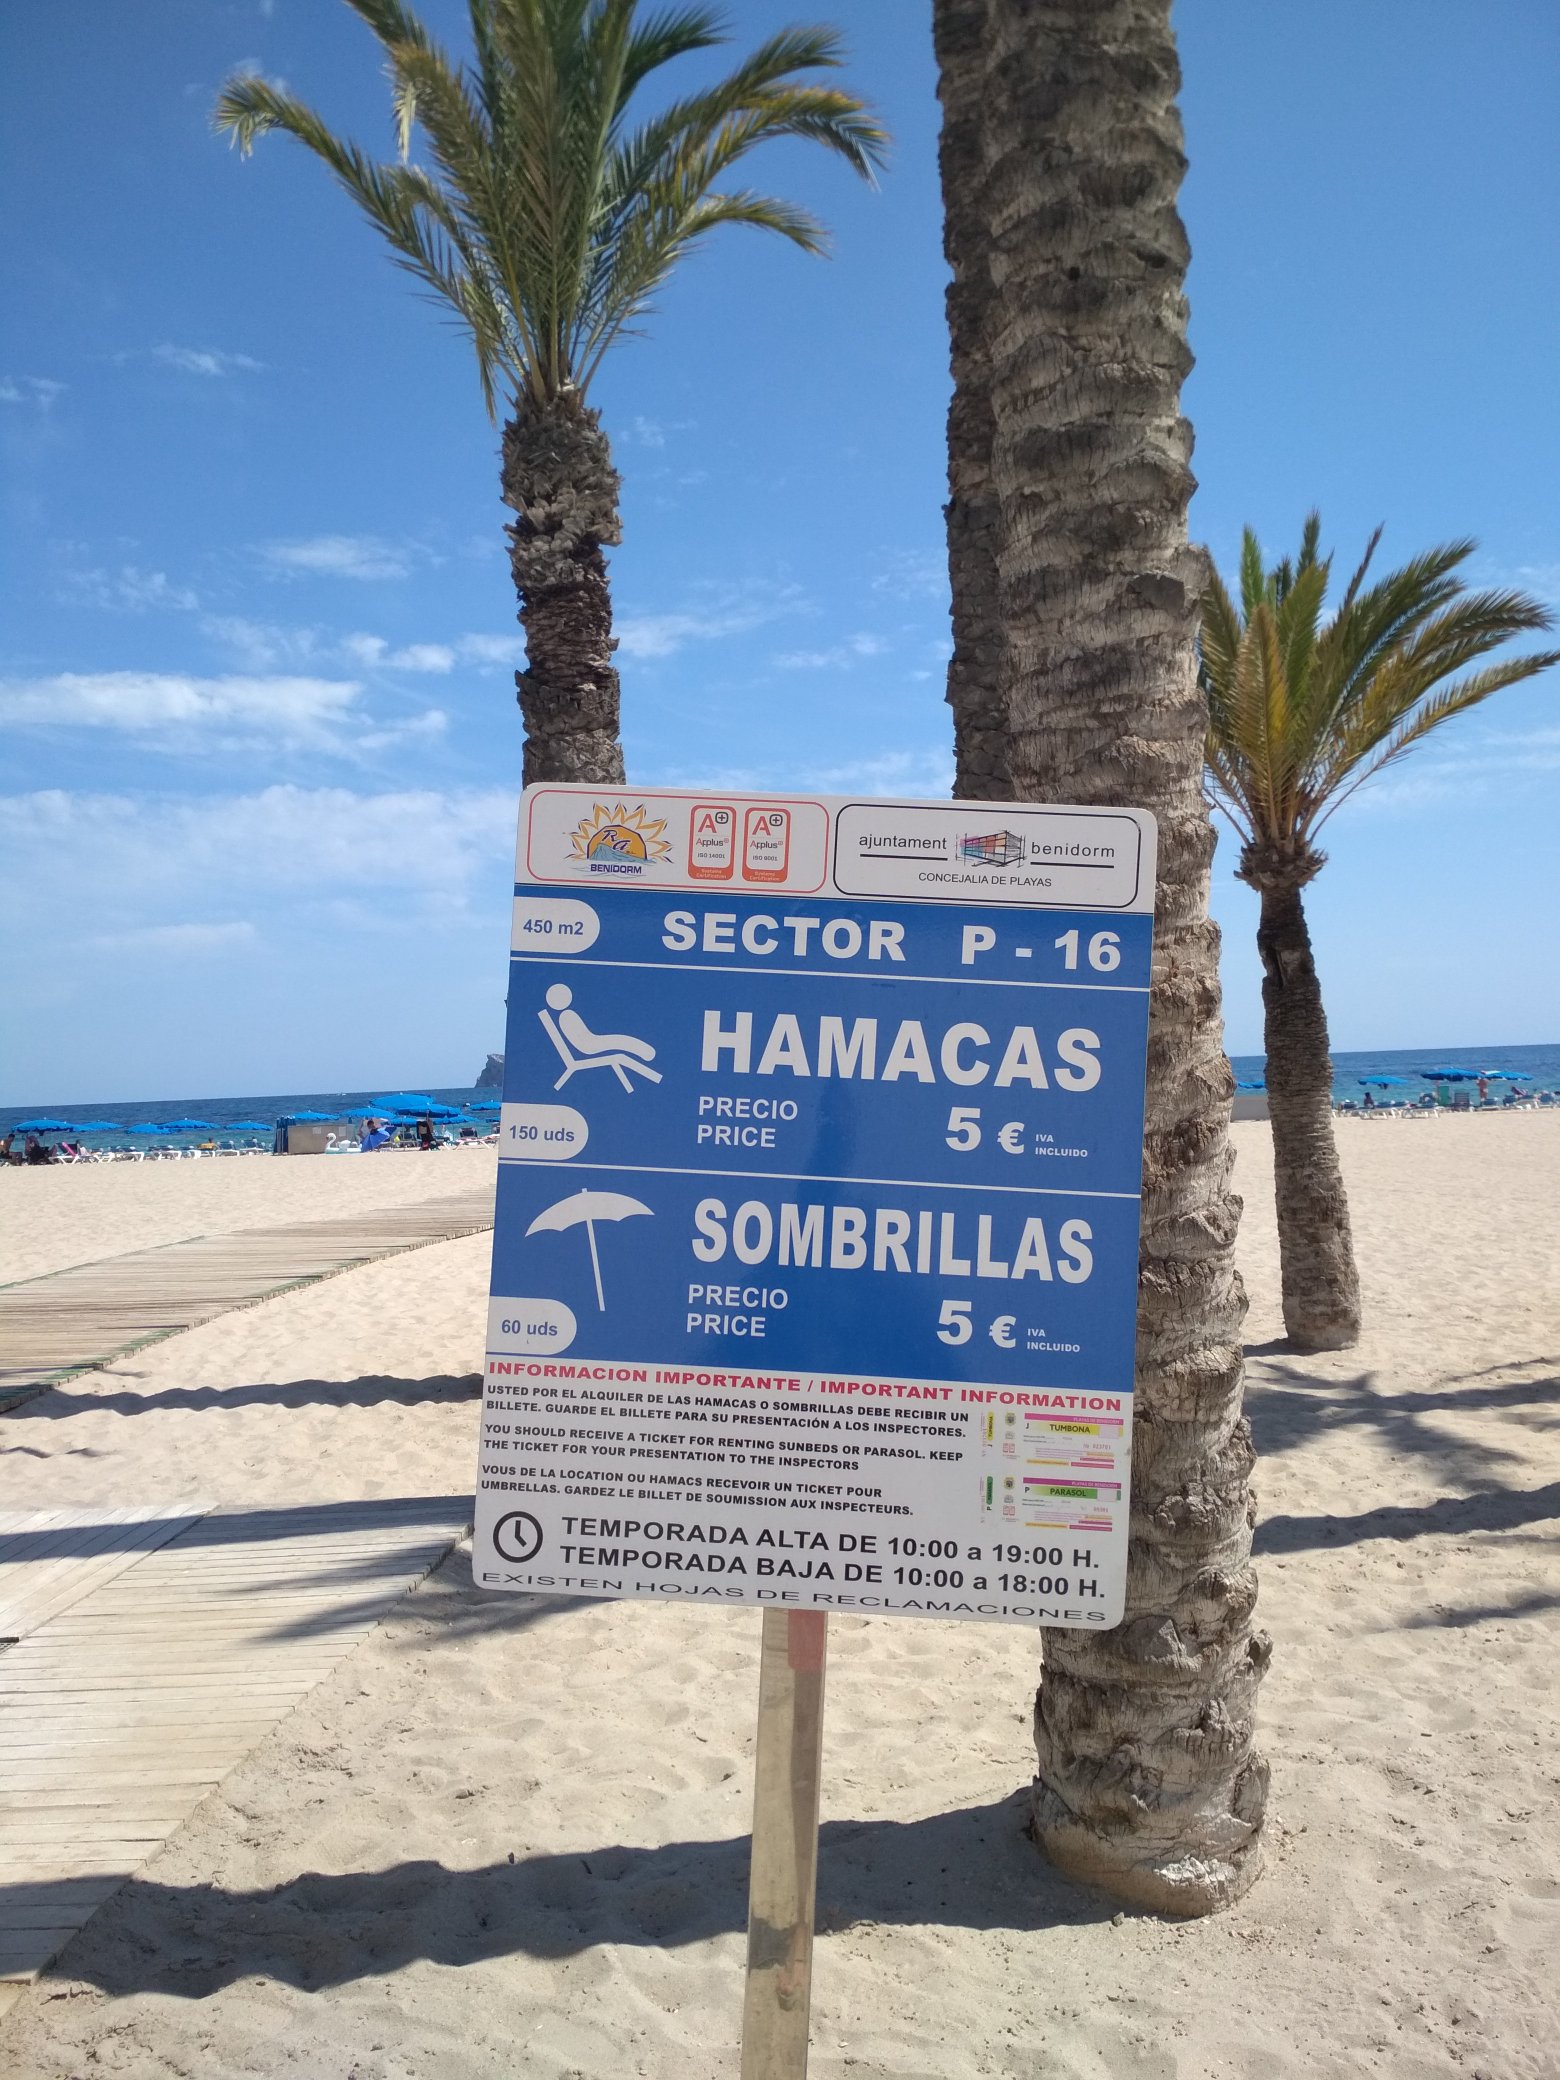 Lo anterior escritura Ocurrencia Quique Sánchez on Twitter: "15 € por 2 hamacas y 1 sombrilla en la playa de  poniente de Benidorm ¿Estamos locos? @benidormonline @turismobenidorm  https://t.co/epbOGLOEmW" / Twitter